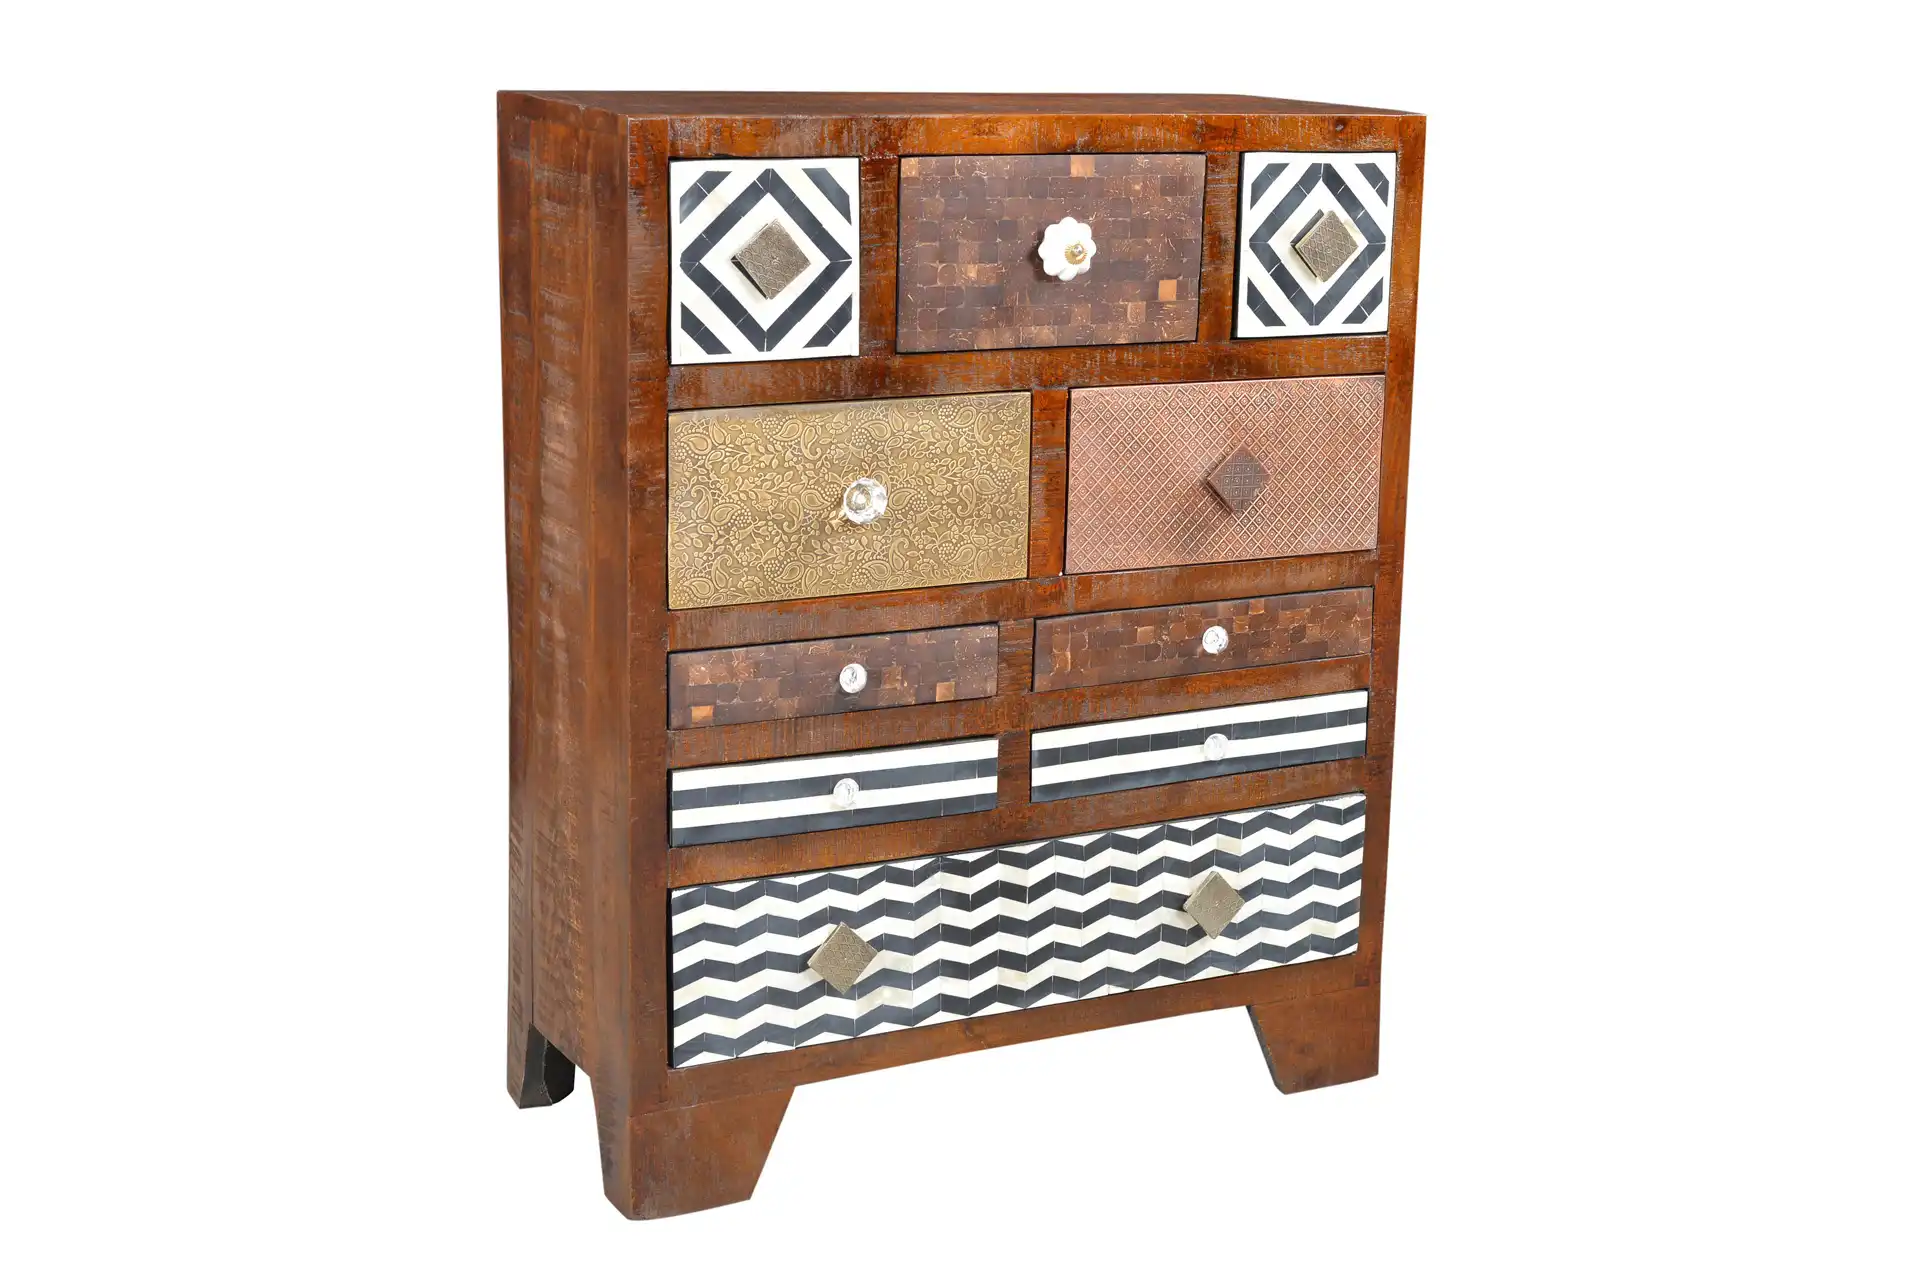 Wooden Cabinet with 6 Drawers & 1 Door - popular handicrafts